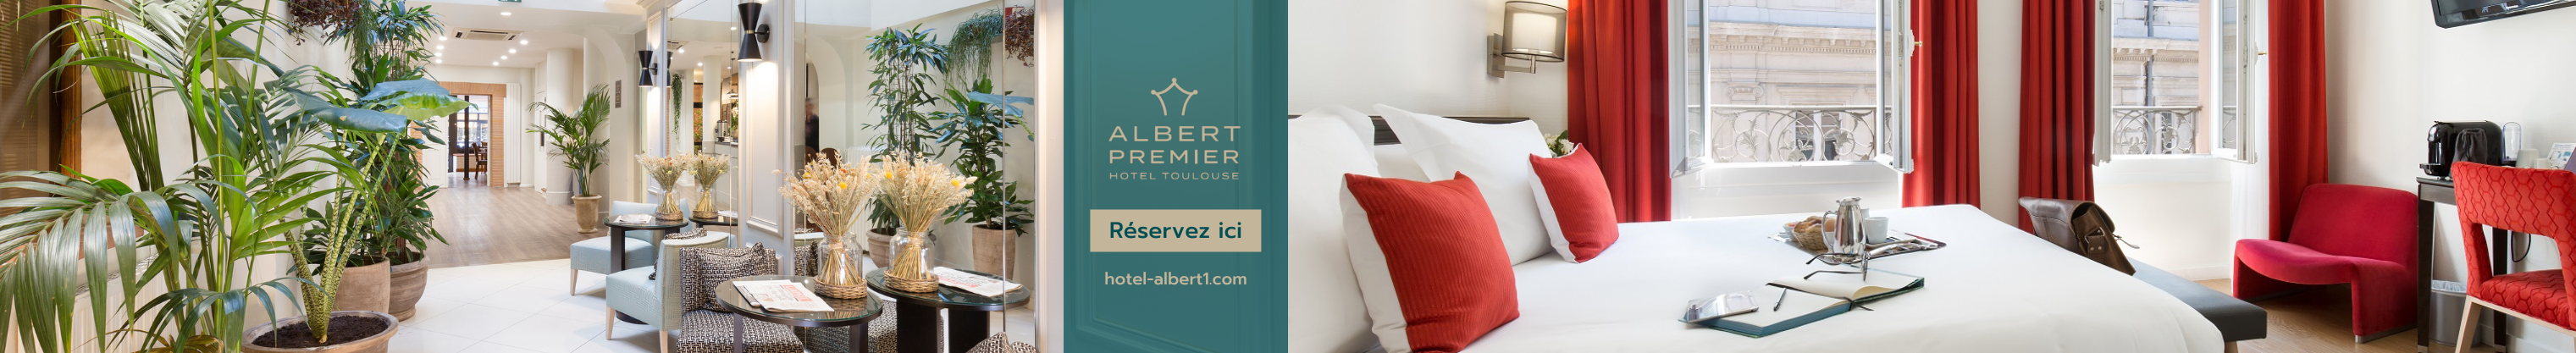 Hotel Albert Ier 2